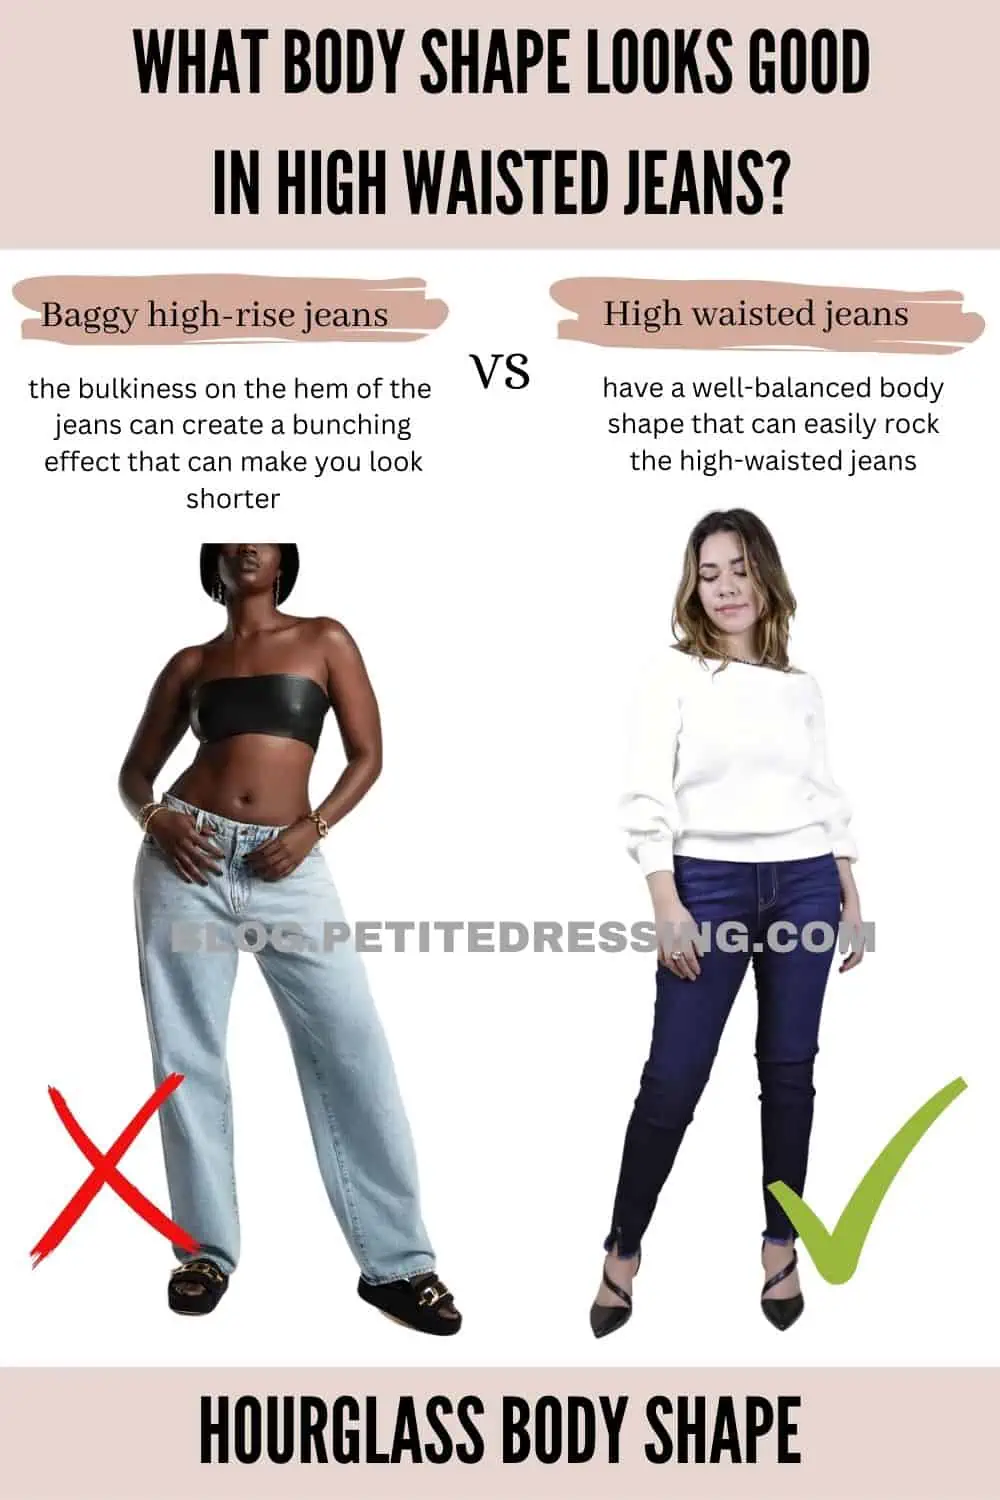 How High Can High-Waisted Pants Go?